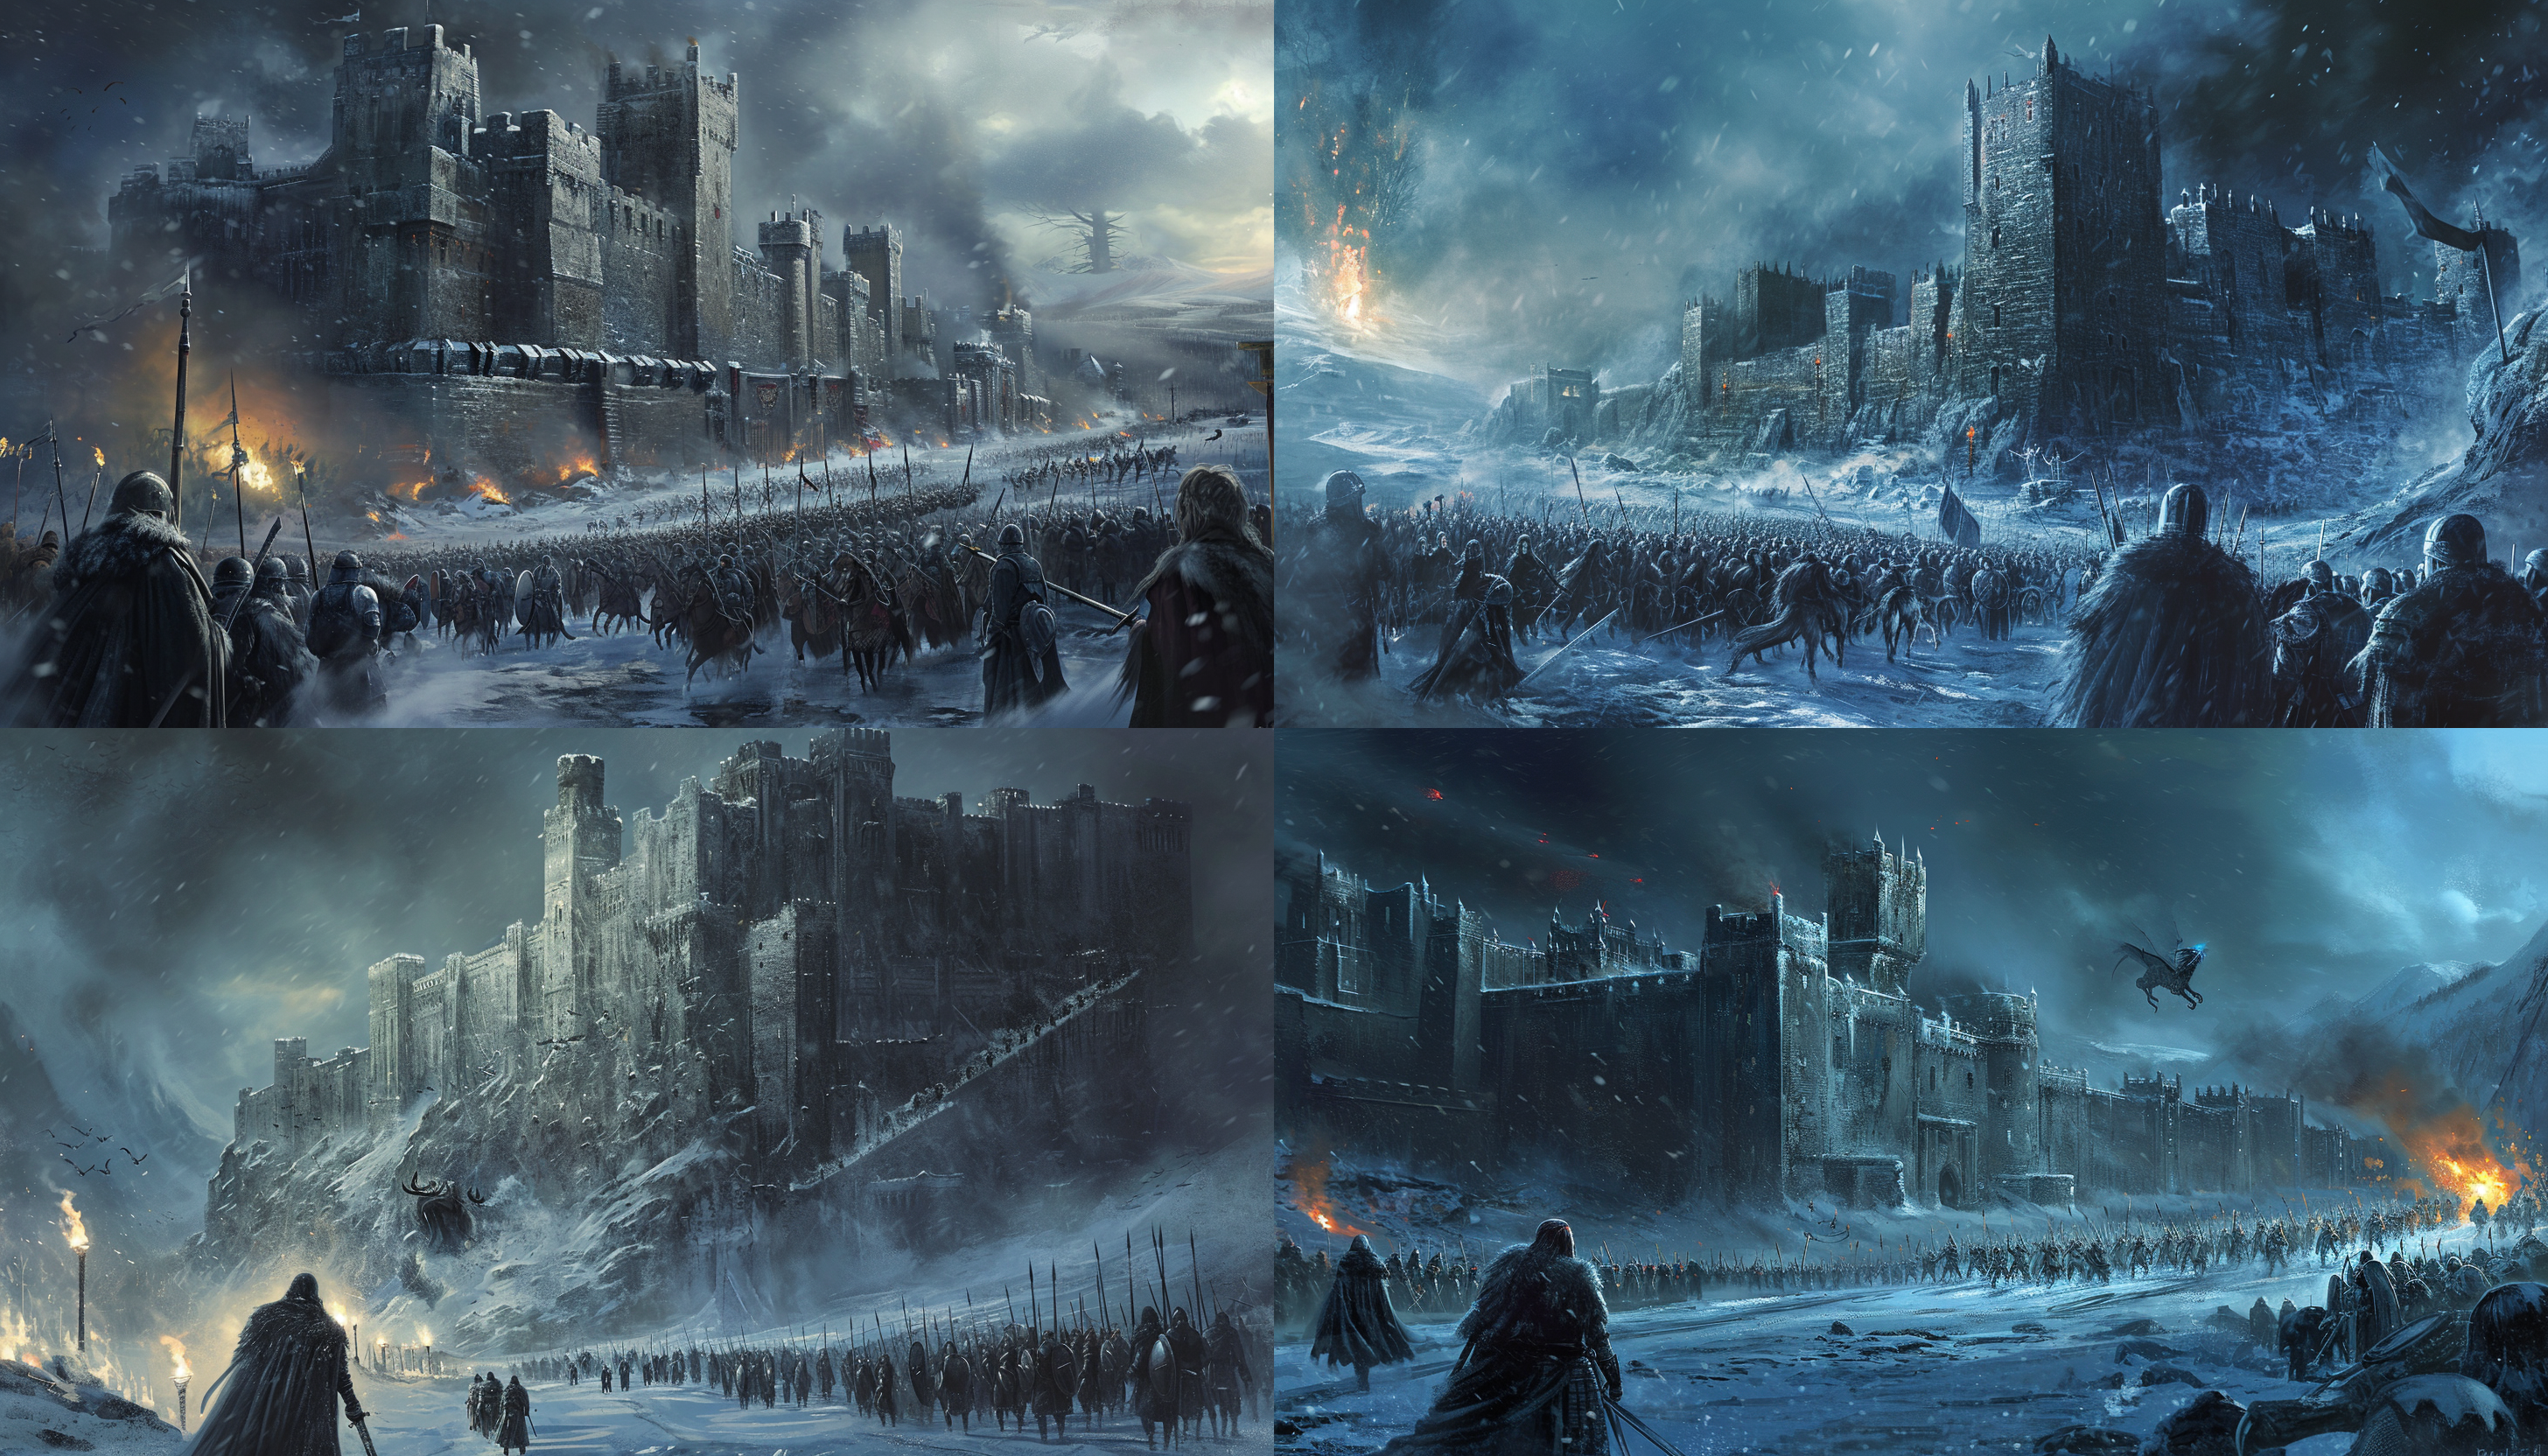 The Battle of Winterfell